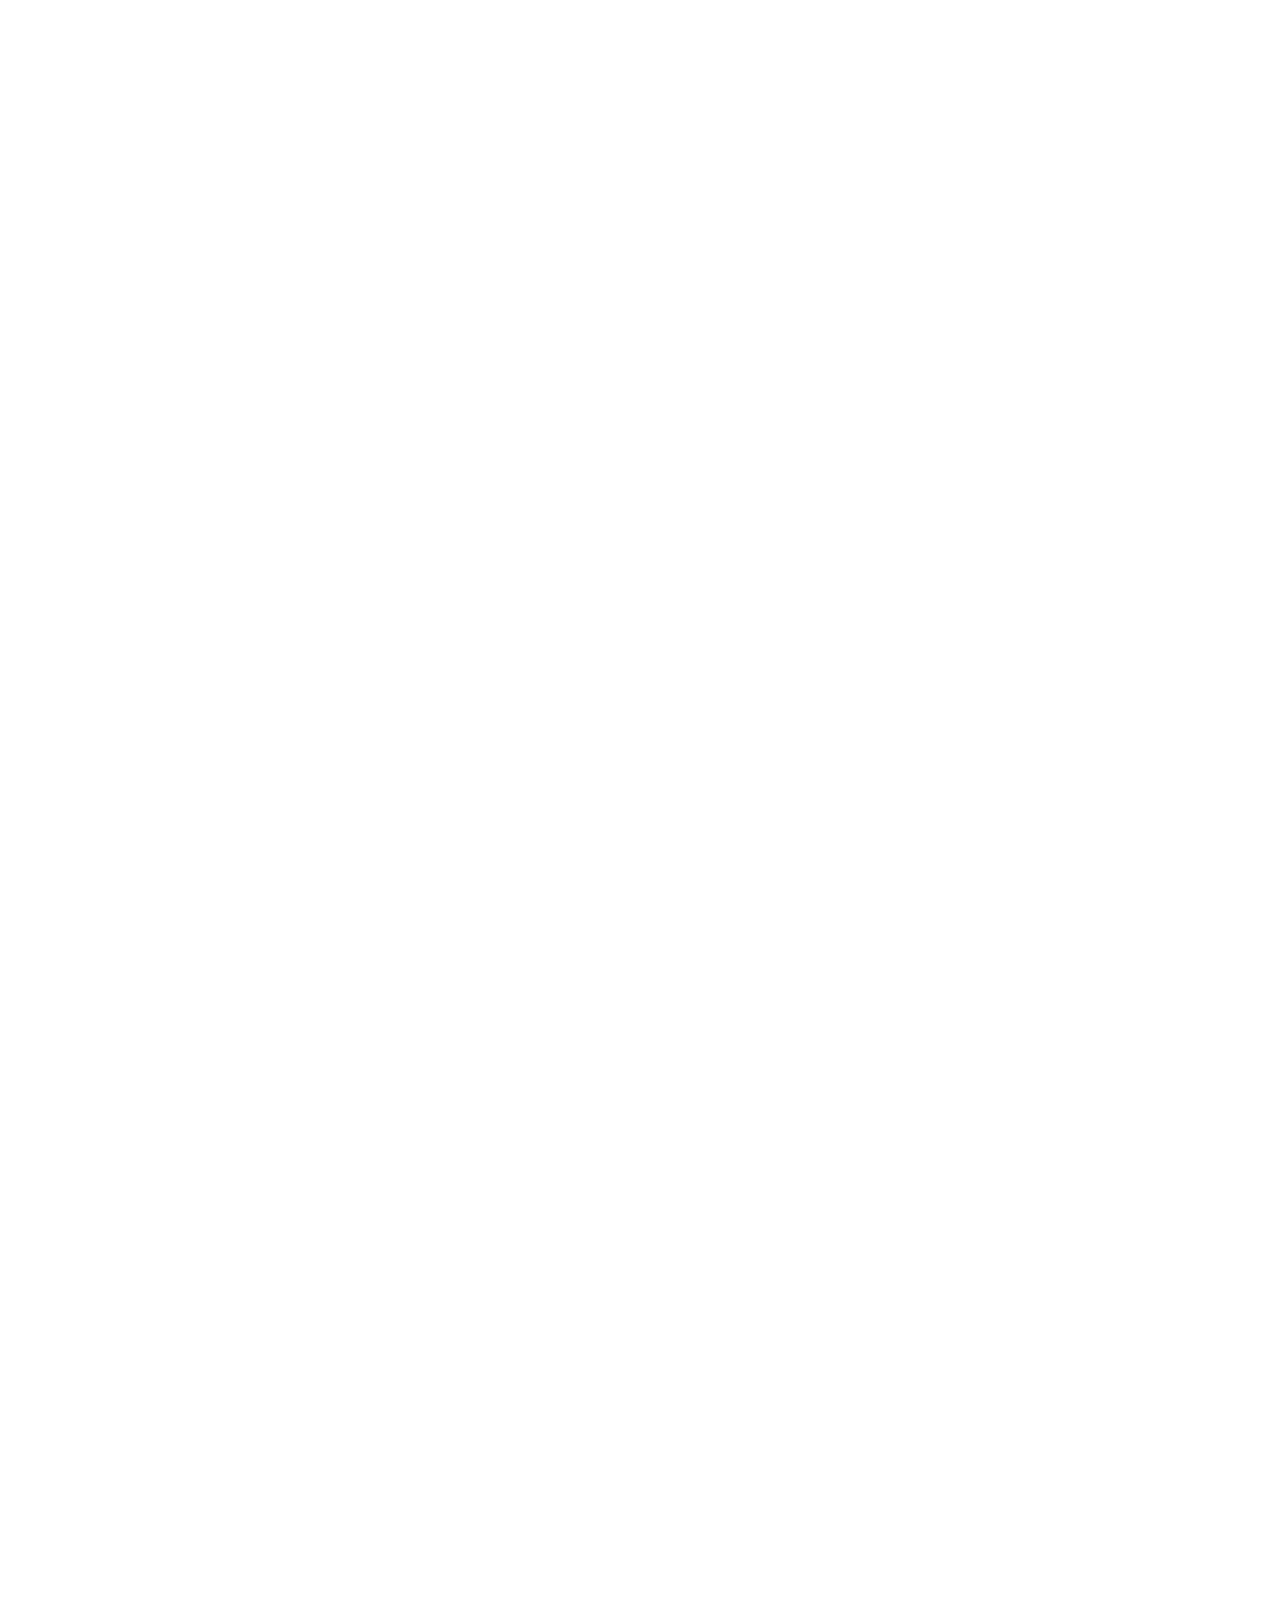 AstraZeneca logo pour fonds sombres (PNG transparent)